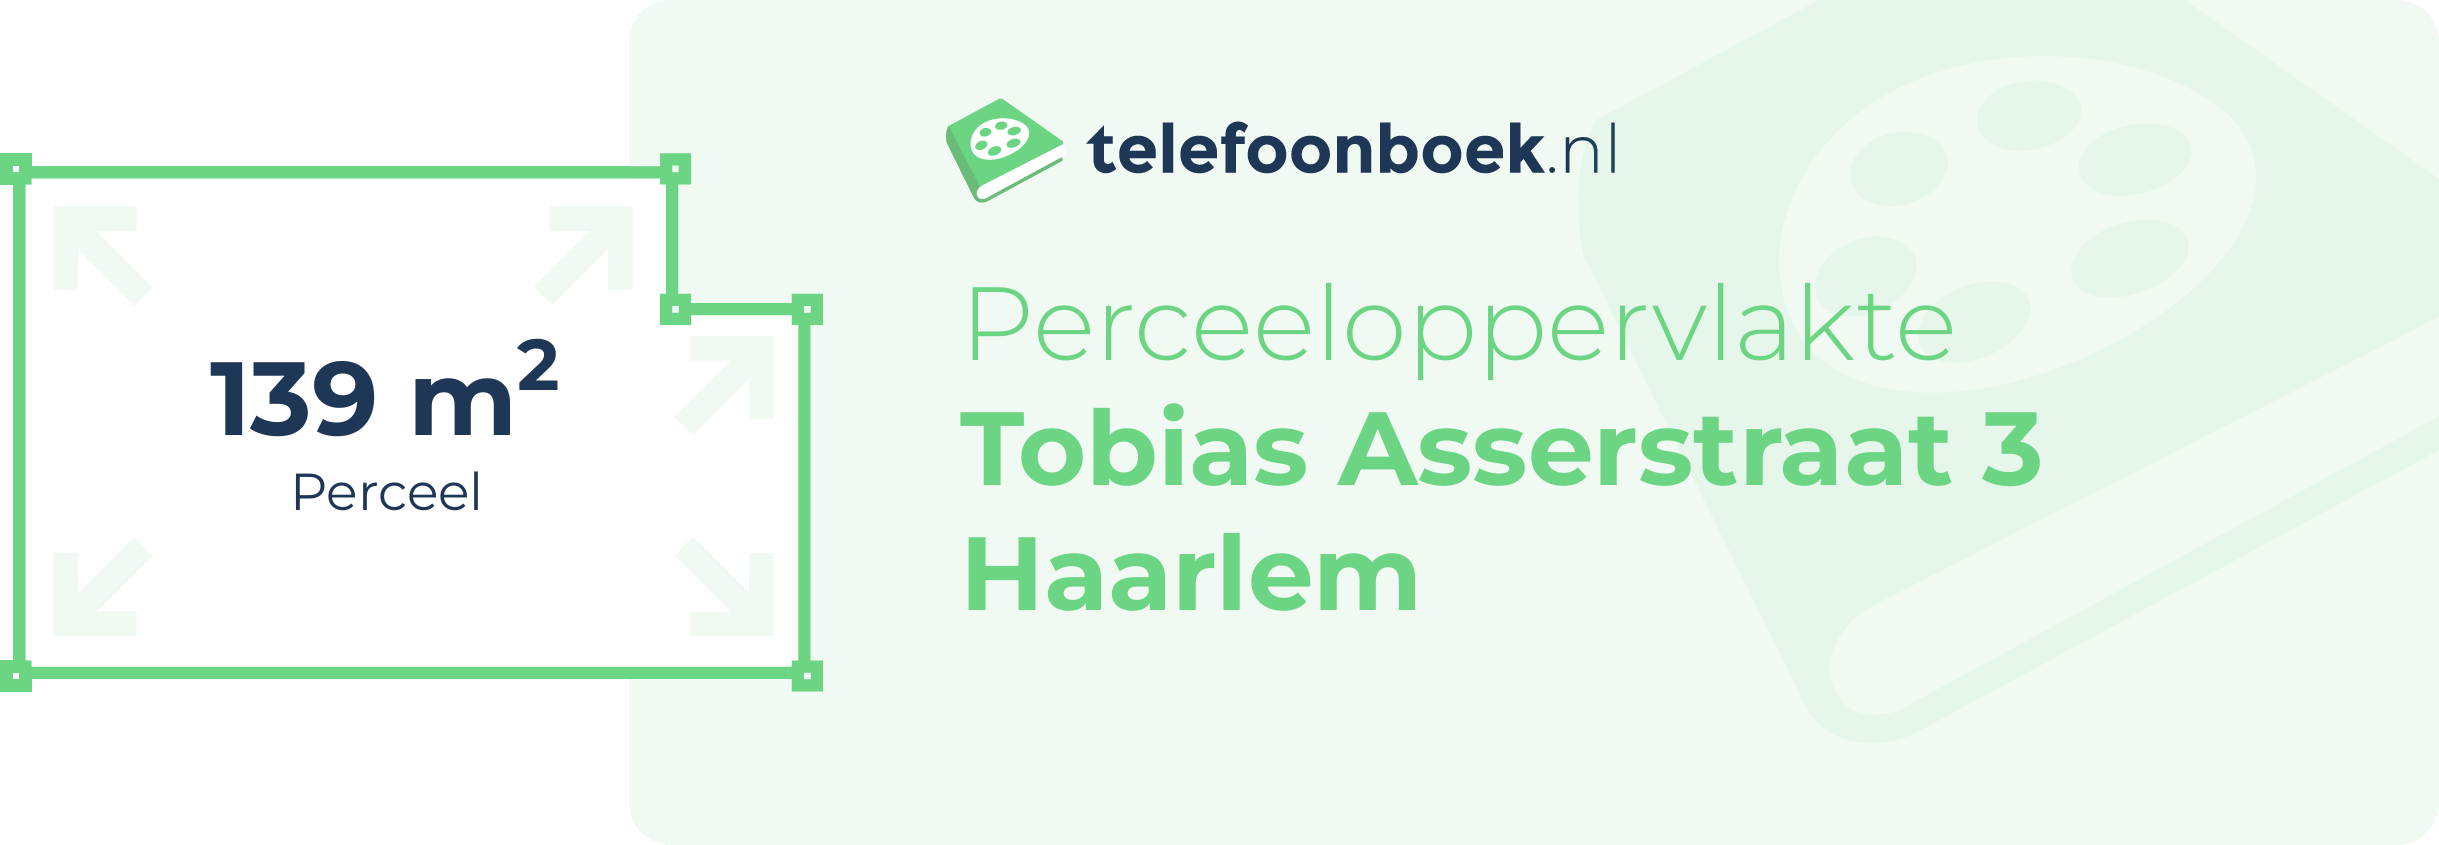 Perceeloppervlakte Tobias Asserstraat 3 Haarlem